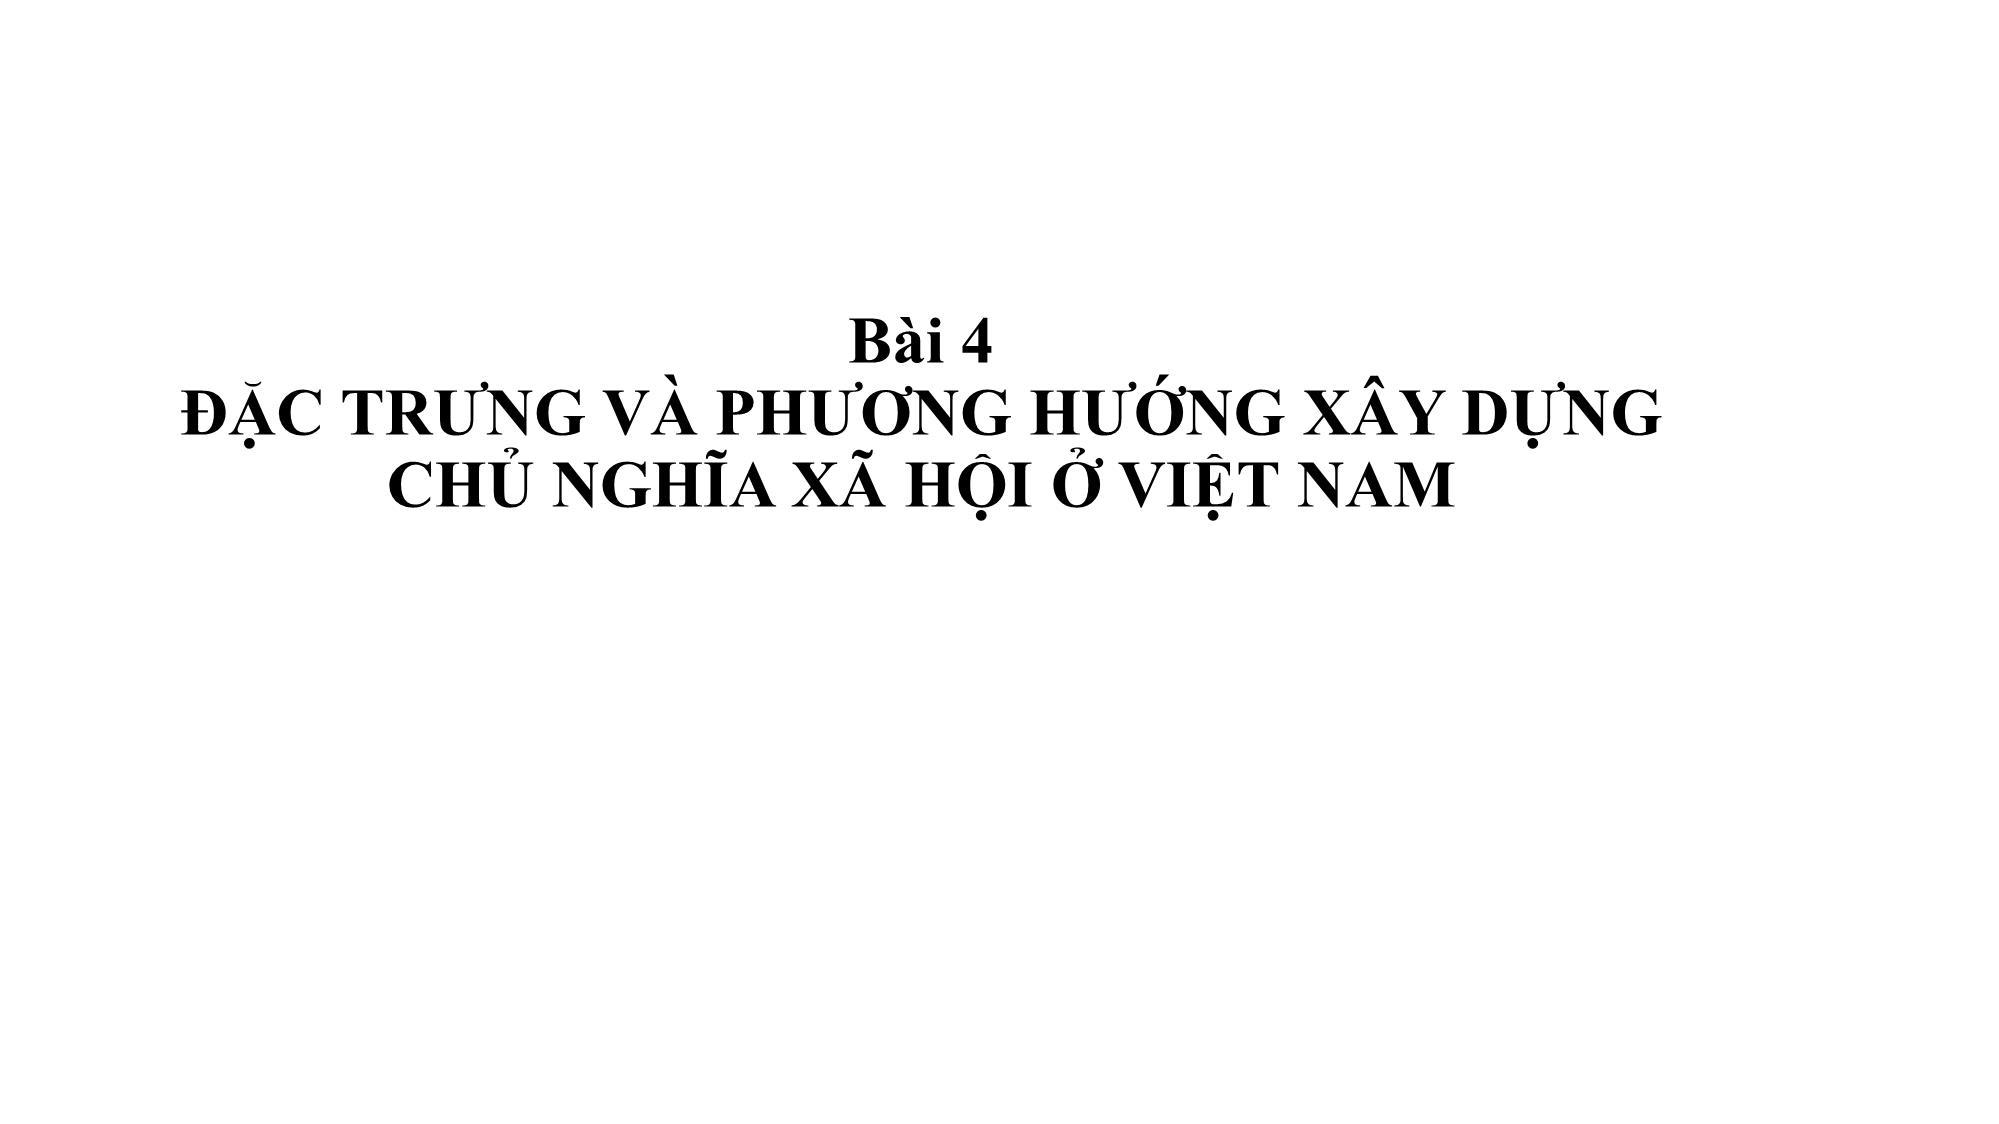 Bài giảng Chính trị - Bài 4: Đặc trưng và phương hướng xây dựng chủ nghĩa xã hội ở Việt Nam trang 1